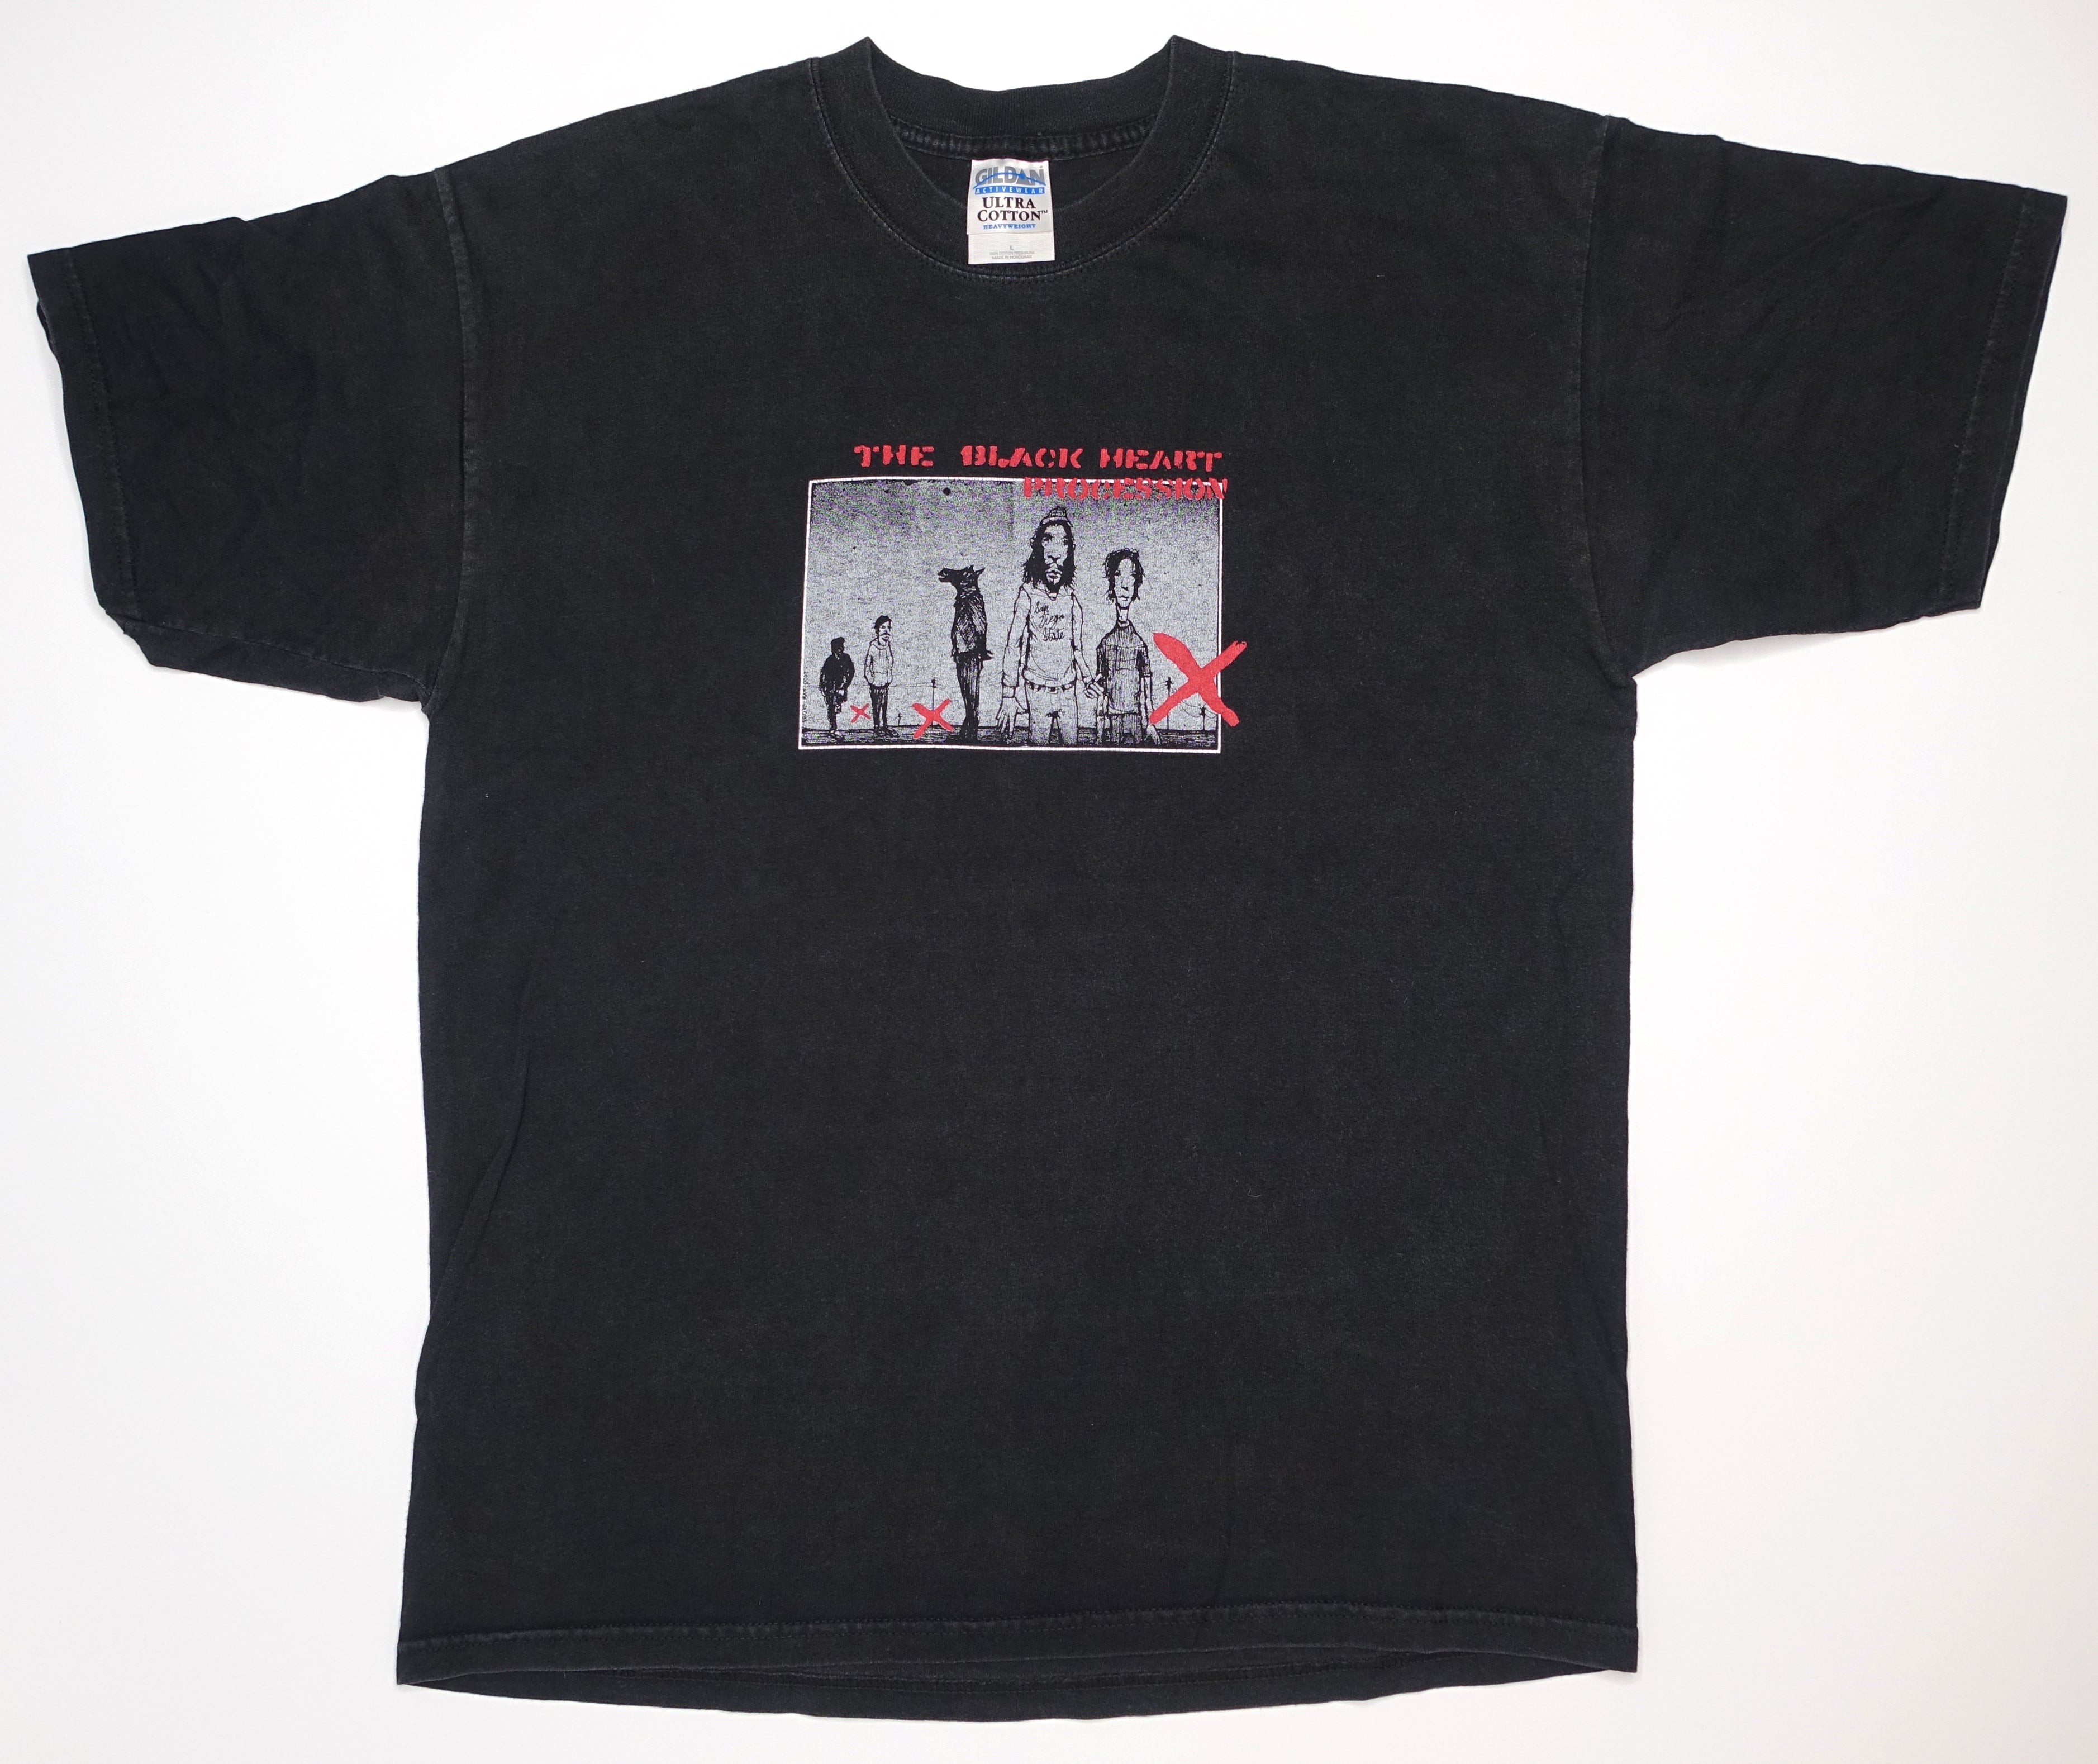 Black Heart Procession - Rich Jacobs Portrait 2000 Tour Shirt Size Large